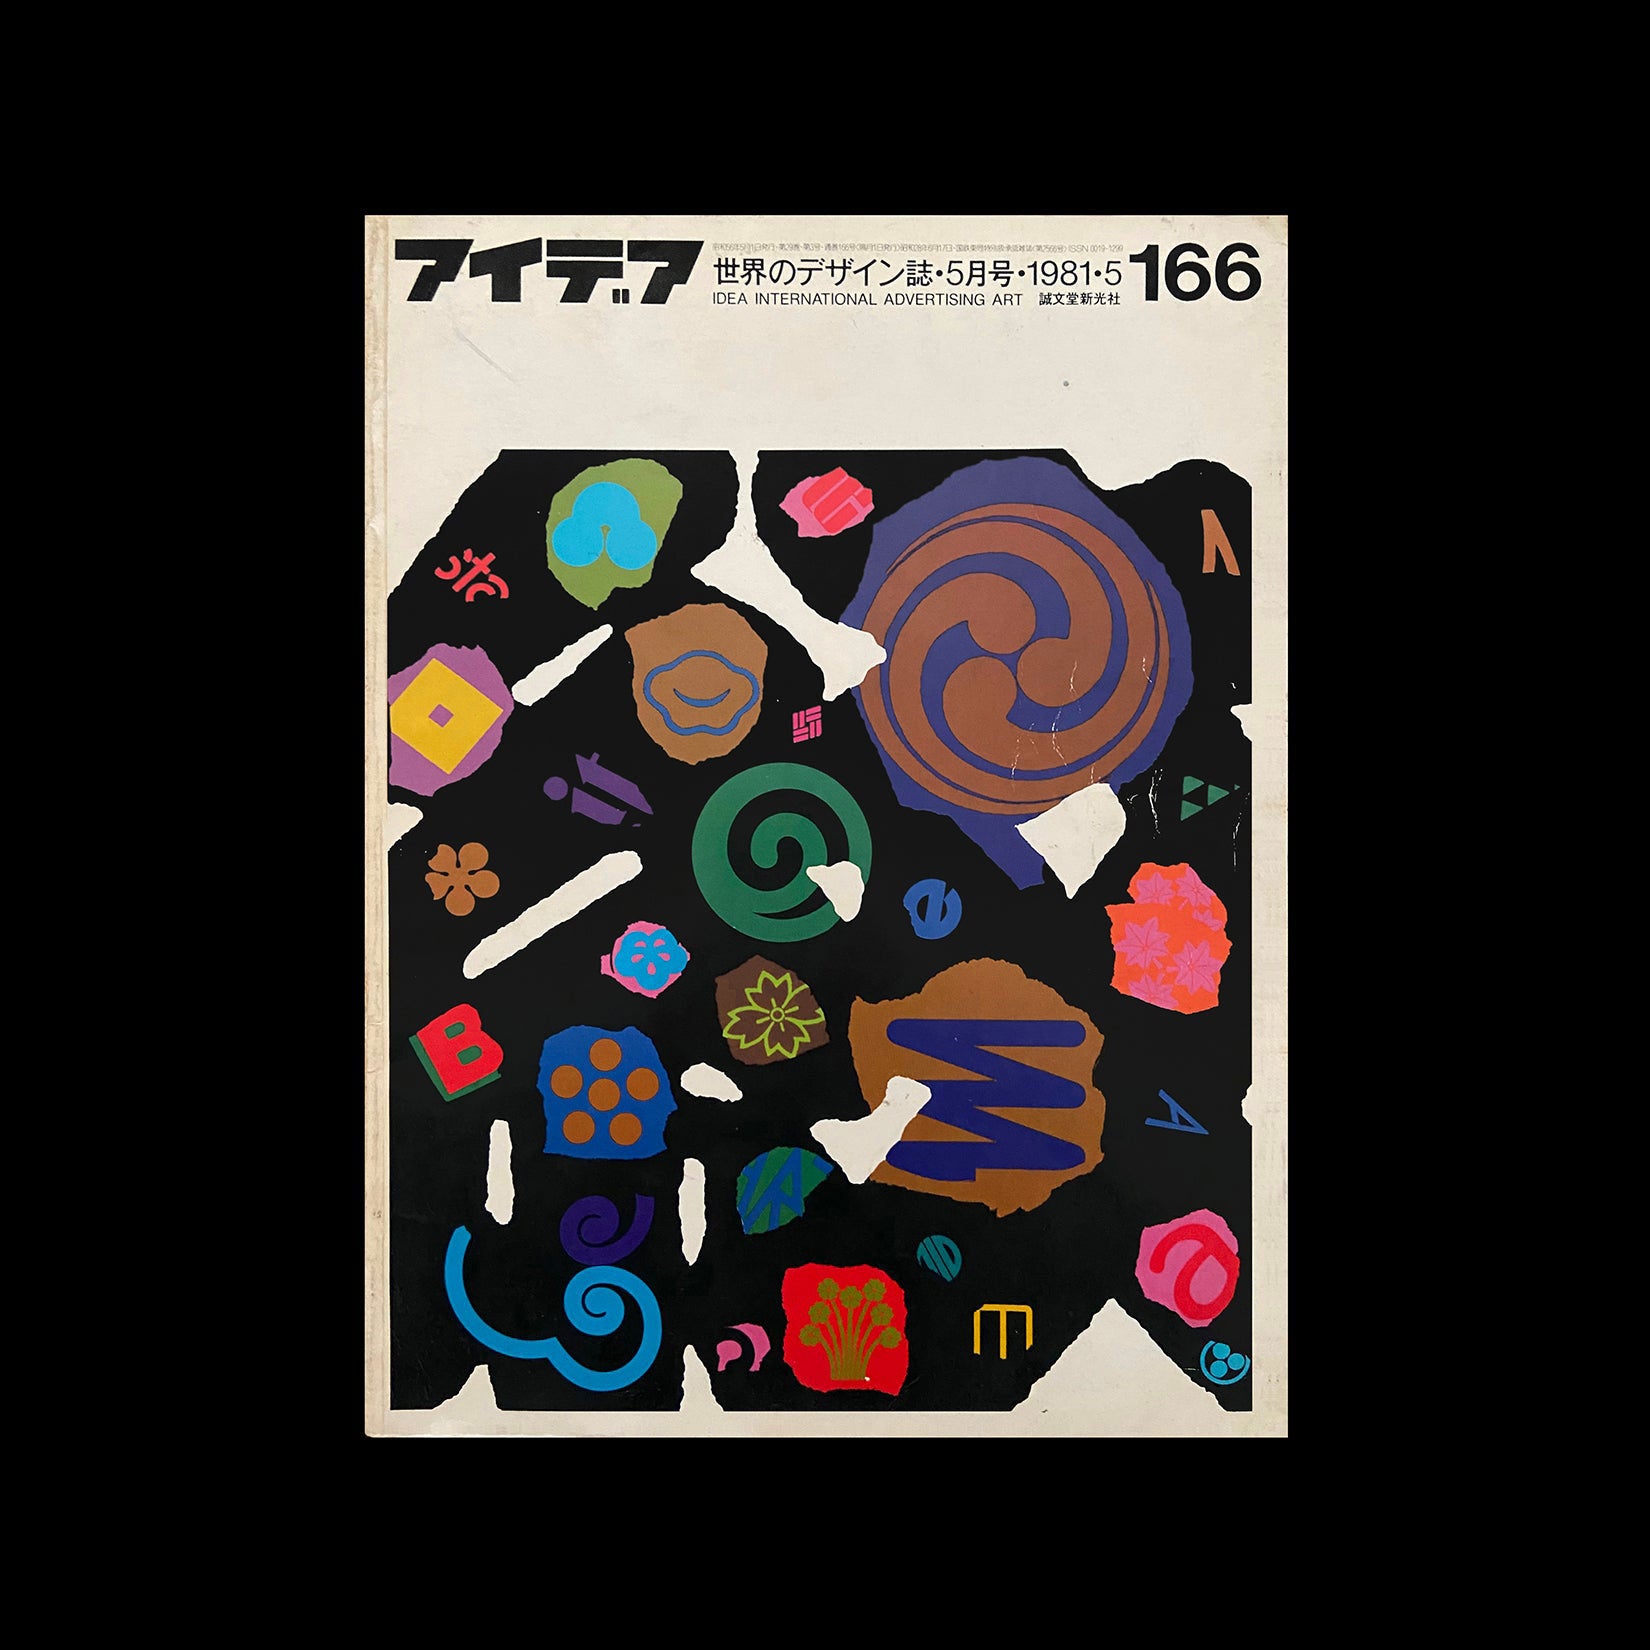 IDEA 166, Ikko Tanaka, 1981